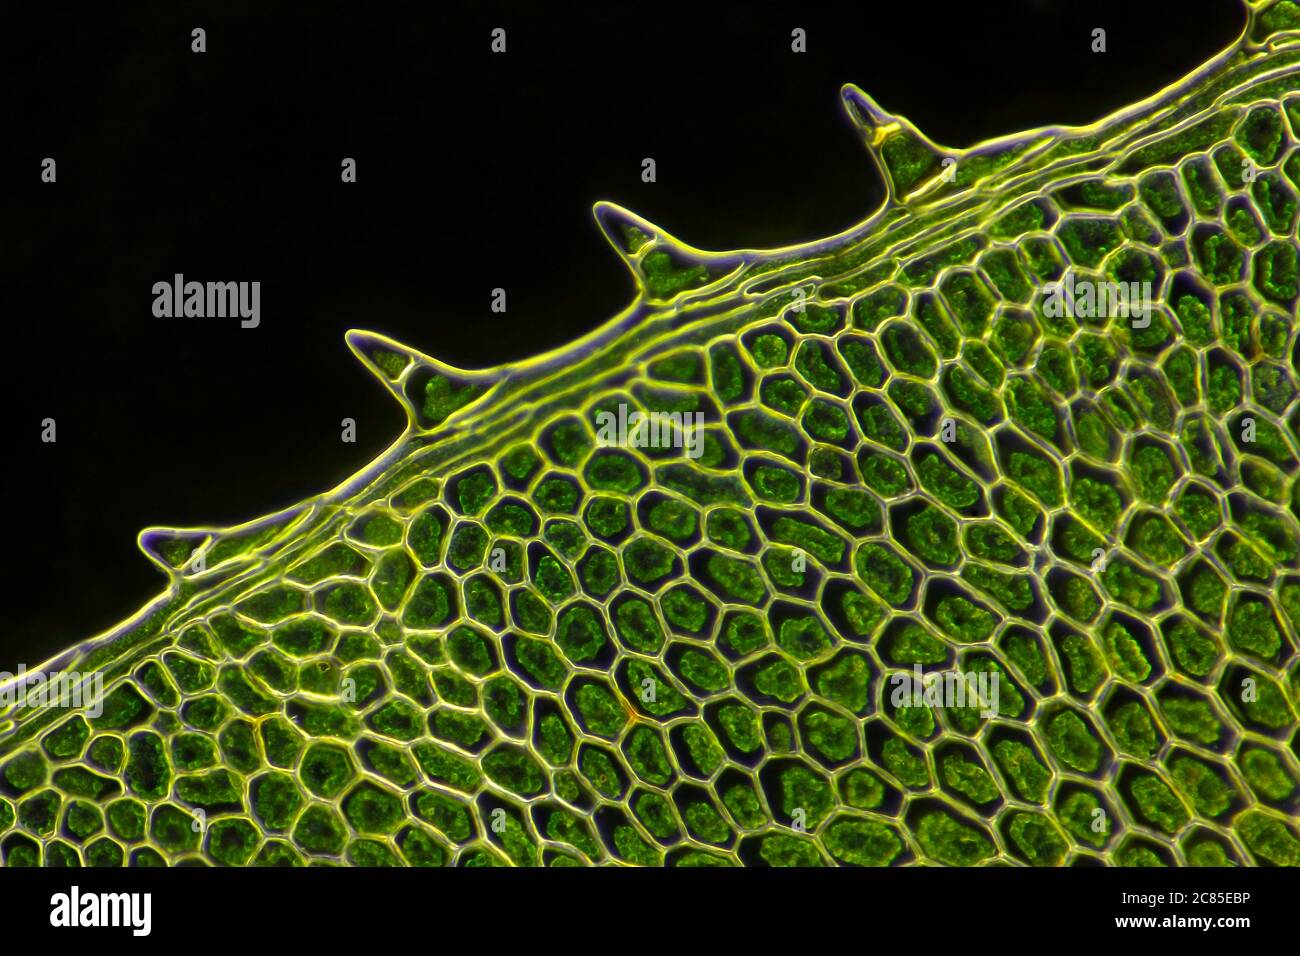 Vue microscopique de la feuille de mousse (Plagiomnium affine). Éclairage de fond noir. Banque D'Images